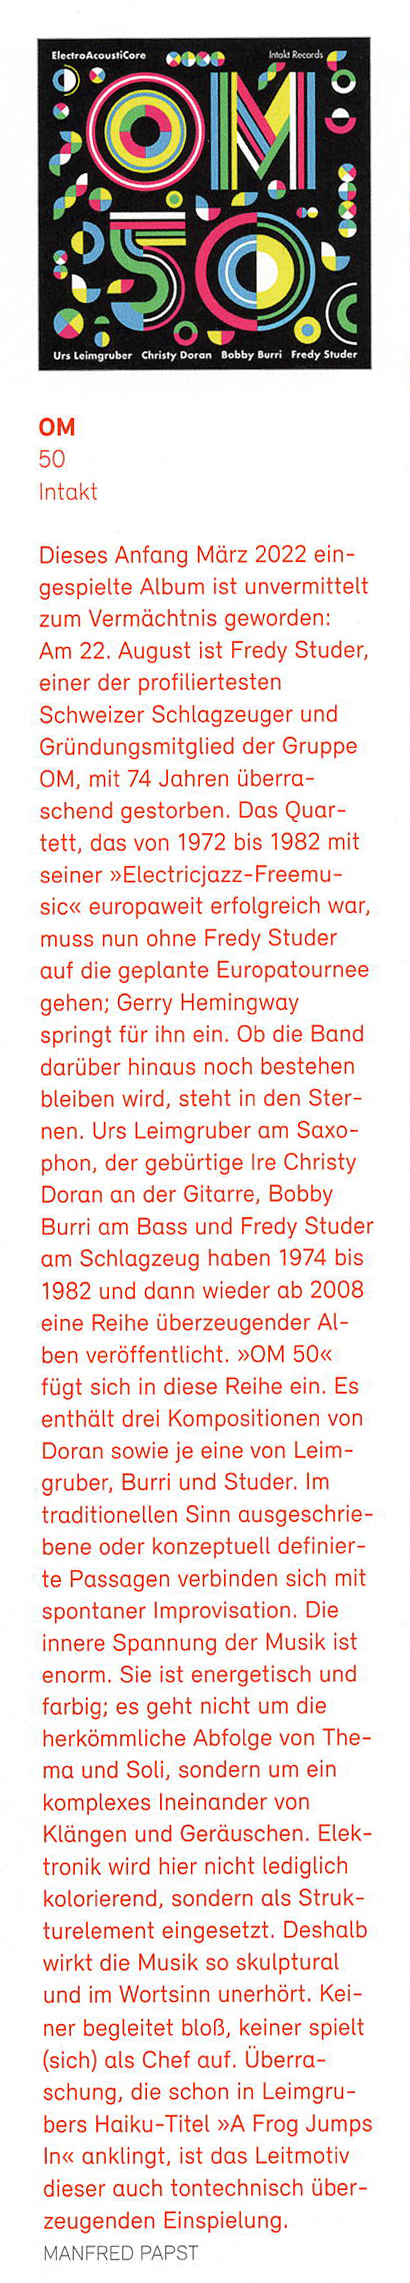 Dieses Anfang März 2022 ein-
																				gespielte Album ist unvermittelt
																				zum Vermächtnis geworden:
																				Am 22. August ist Fredy Studer,
																				einer der profiliertesten
																				Schweizer Schlagzeuger und
																				Gründungsmitglied der Gruppe
																				OM, mit 74 Jahren überra-
																				schend gestorben.